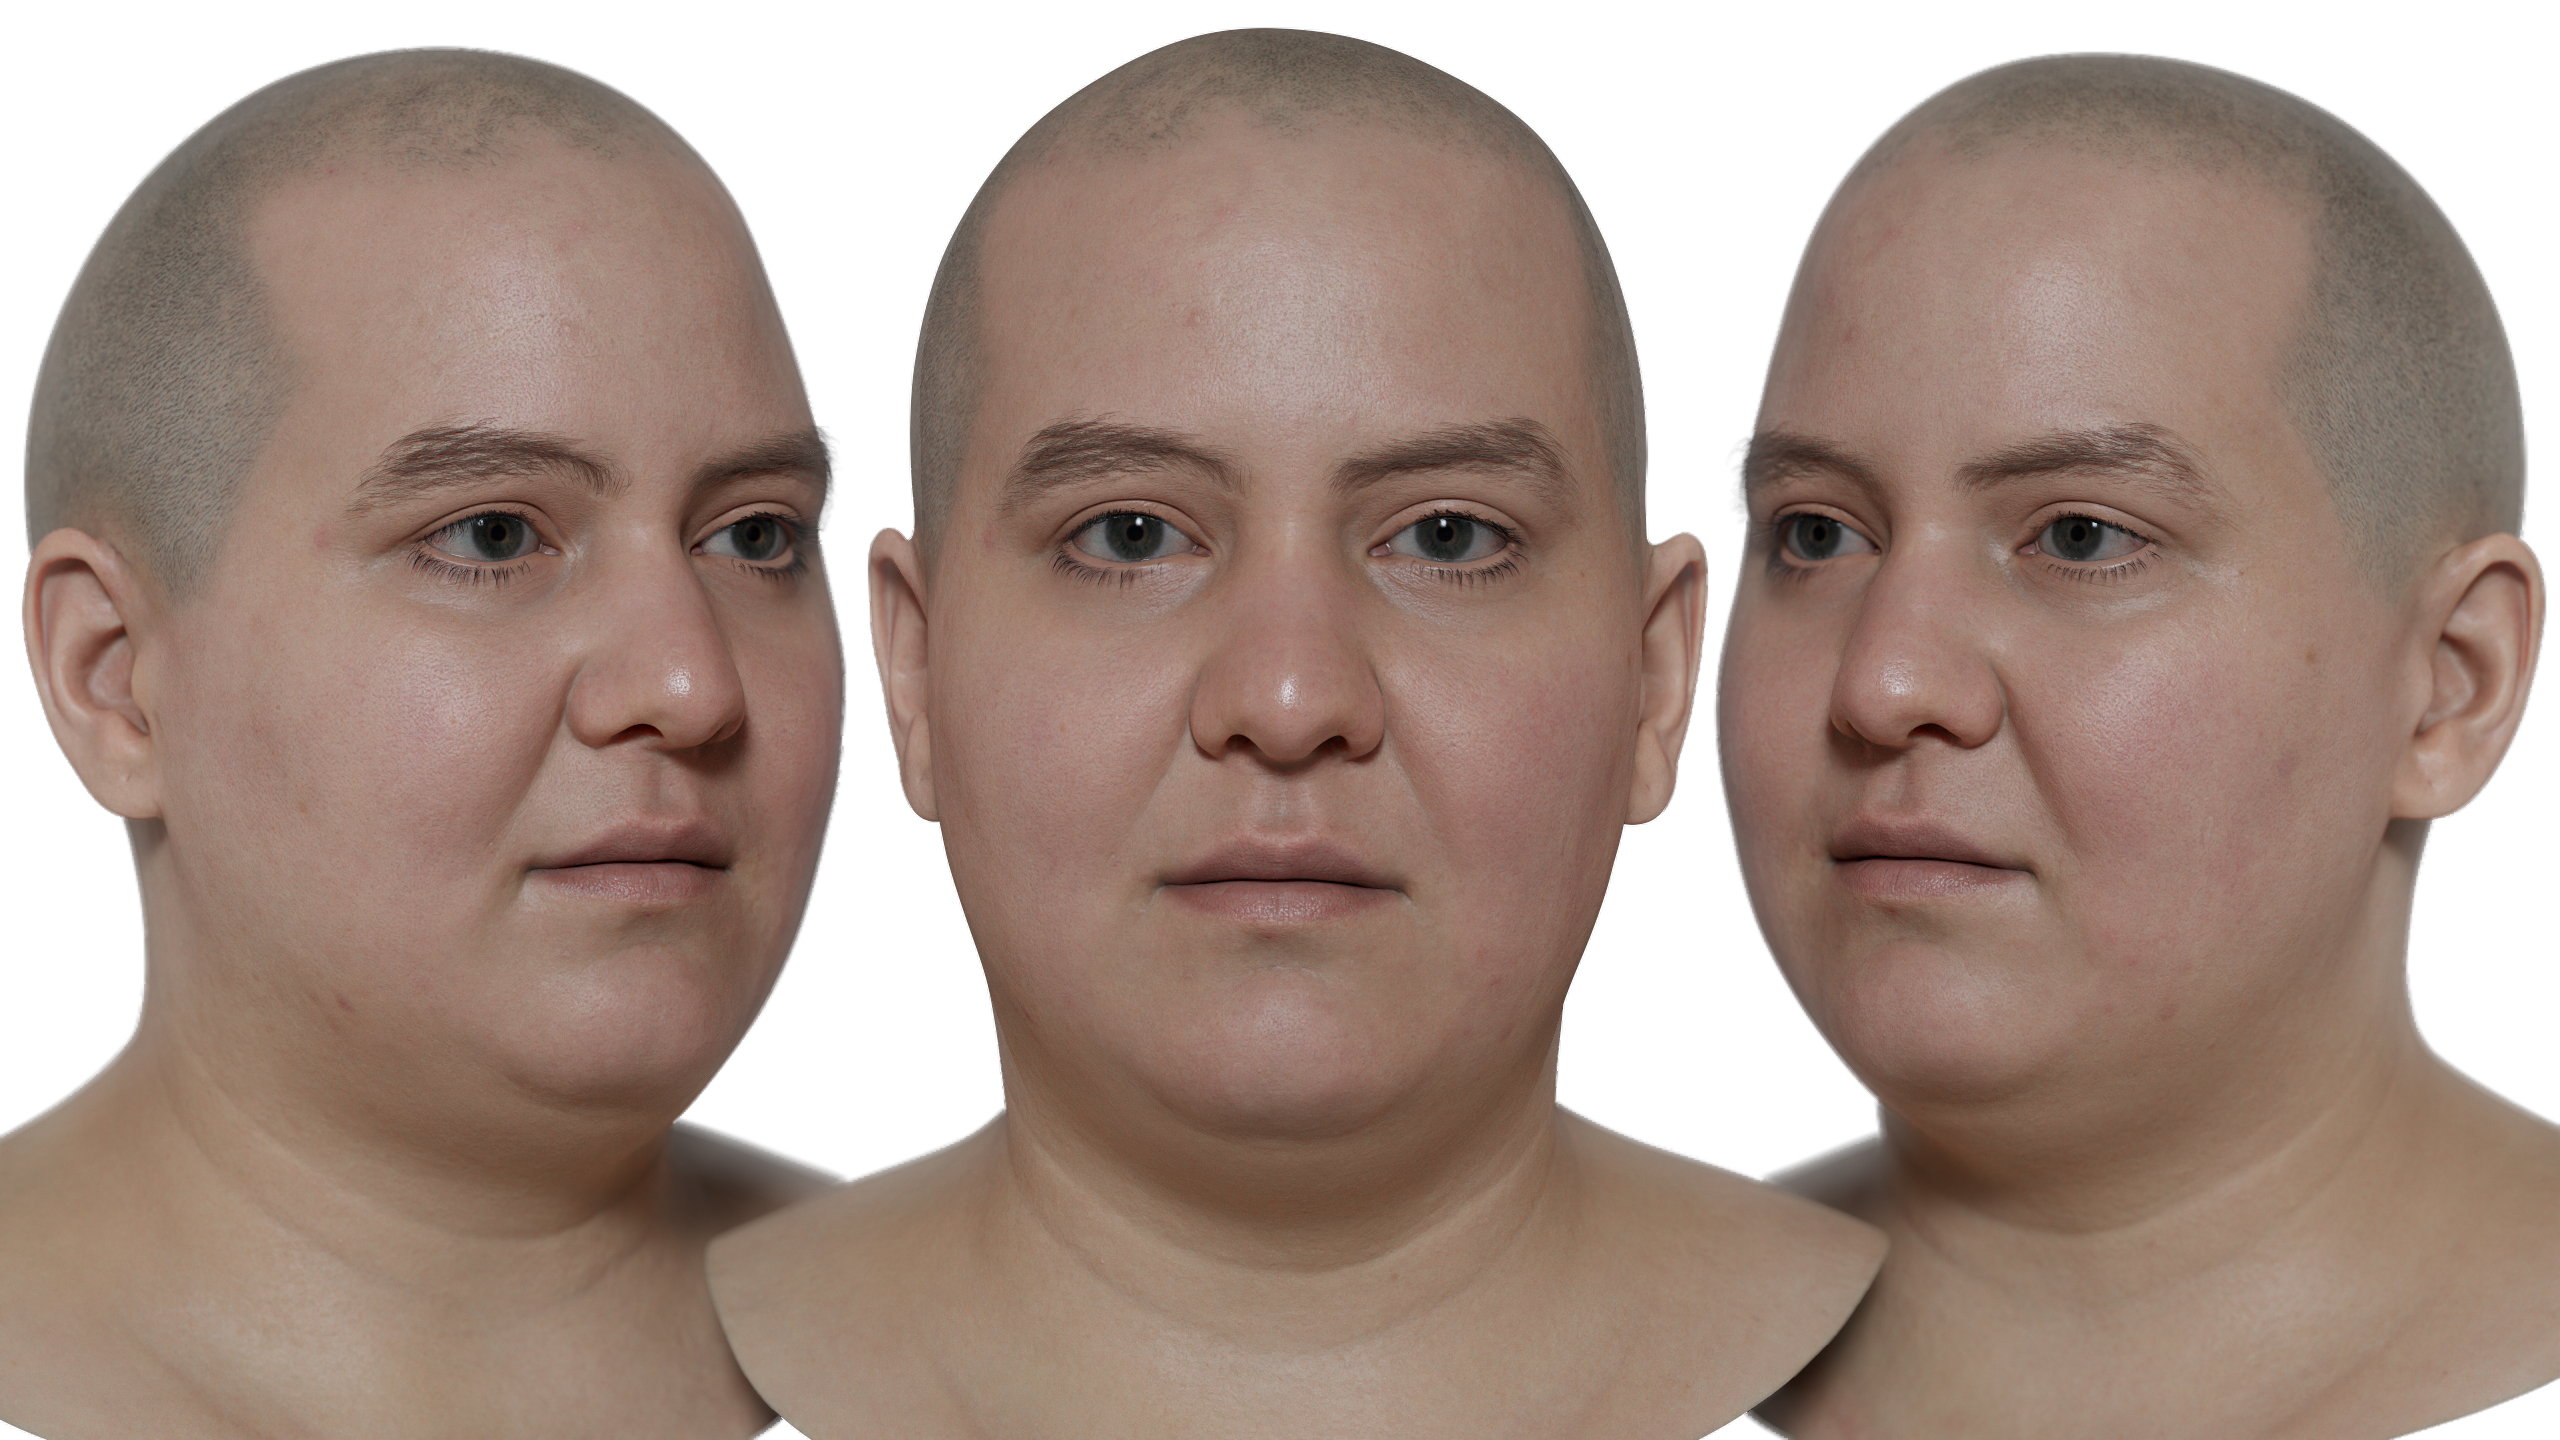 Download Asian male 3d head model scan